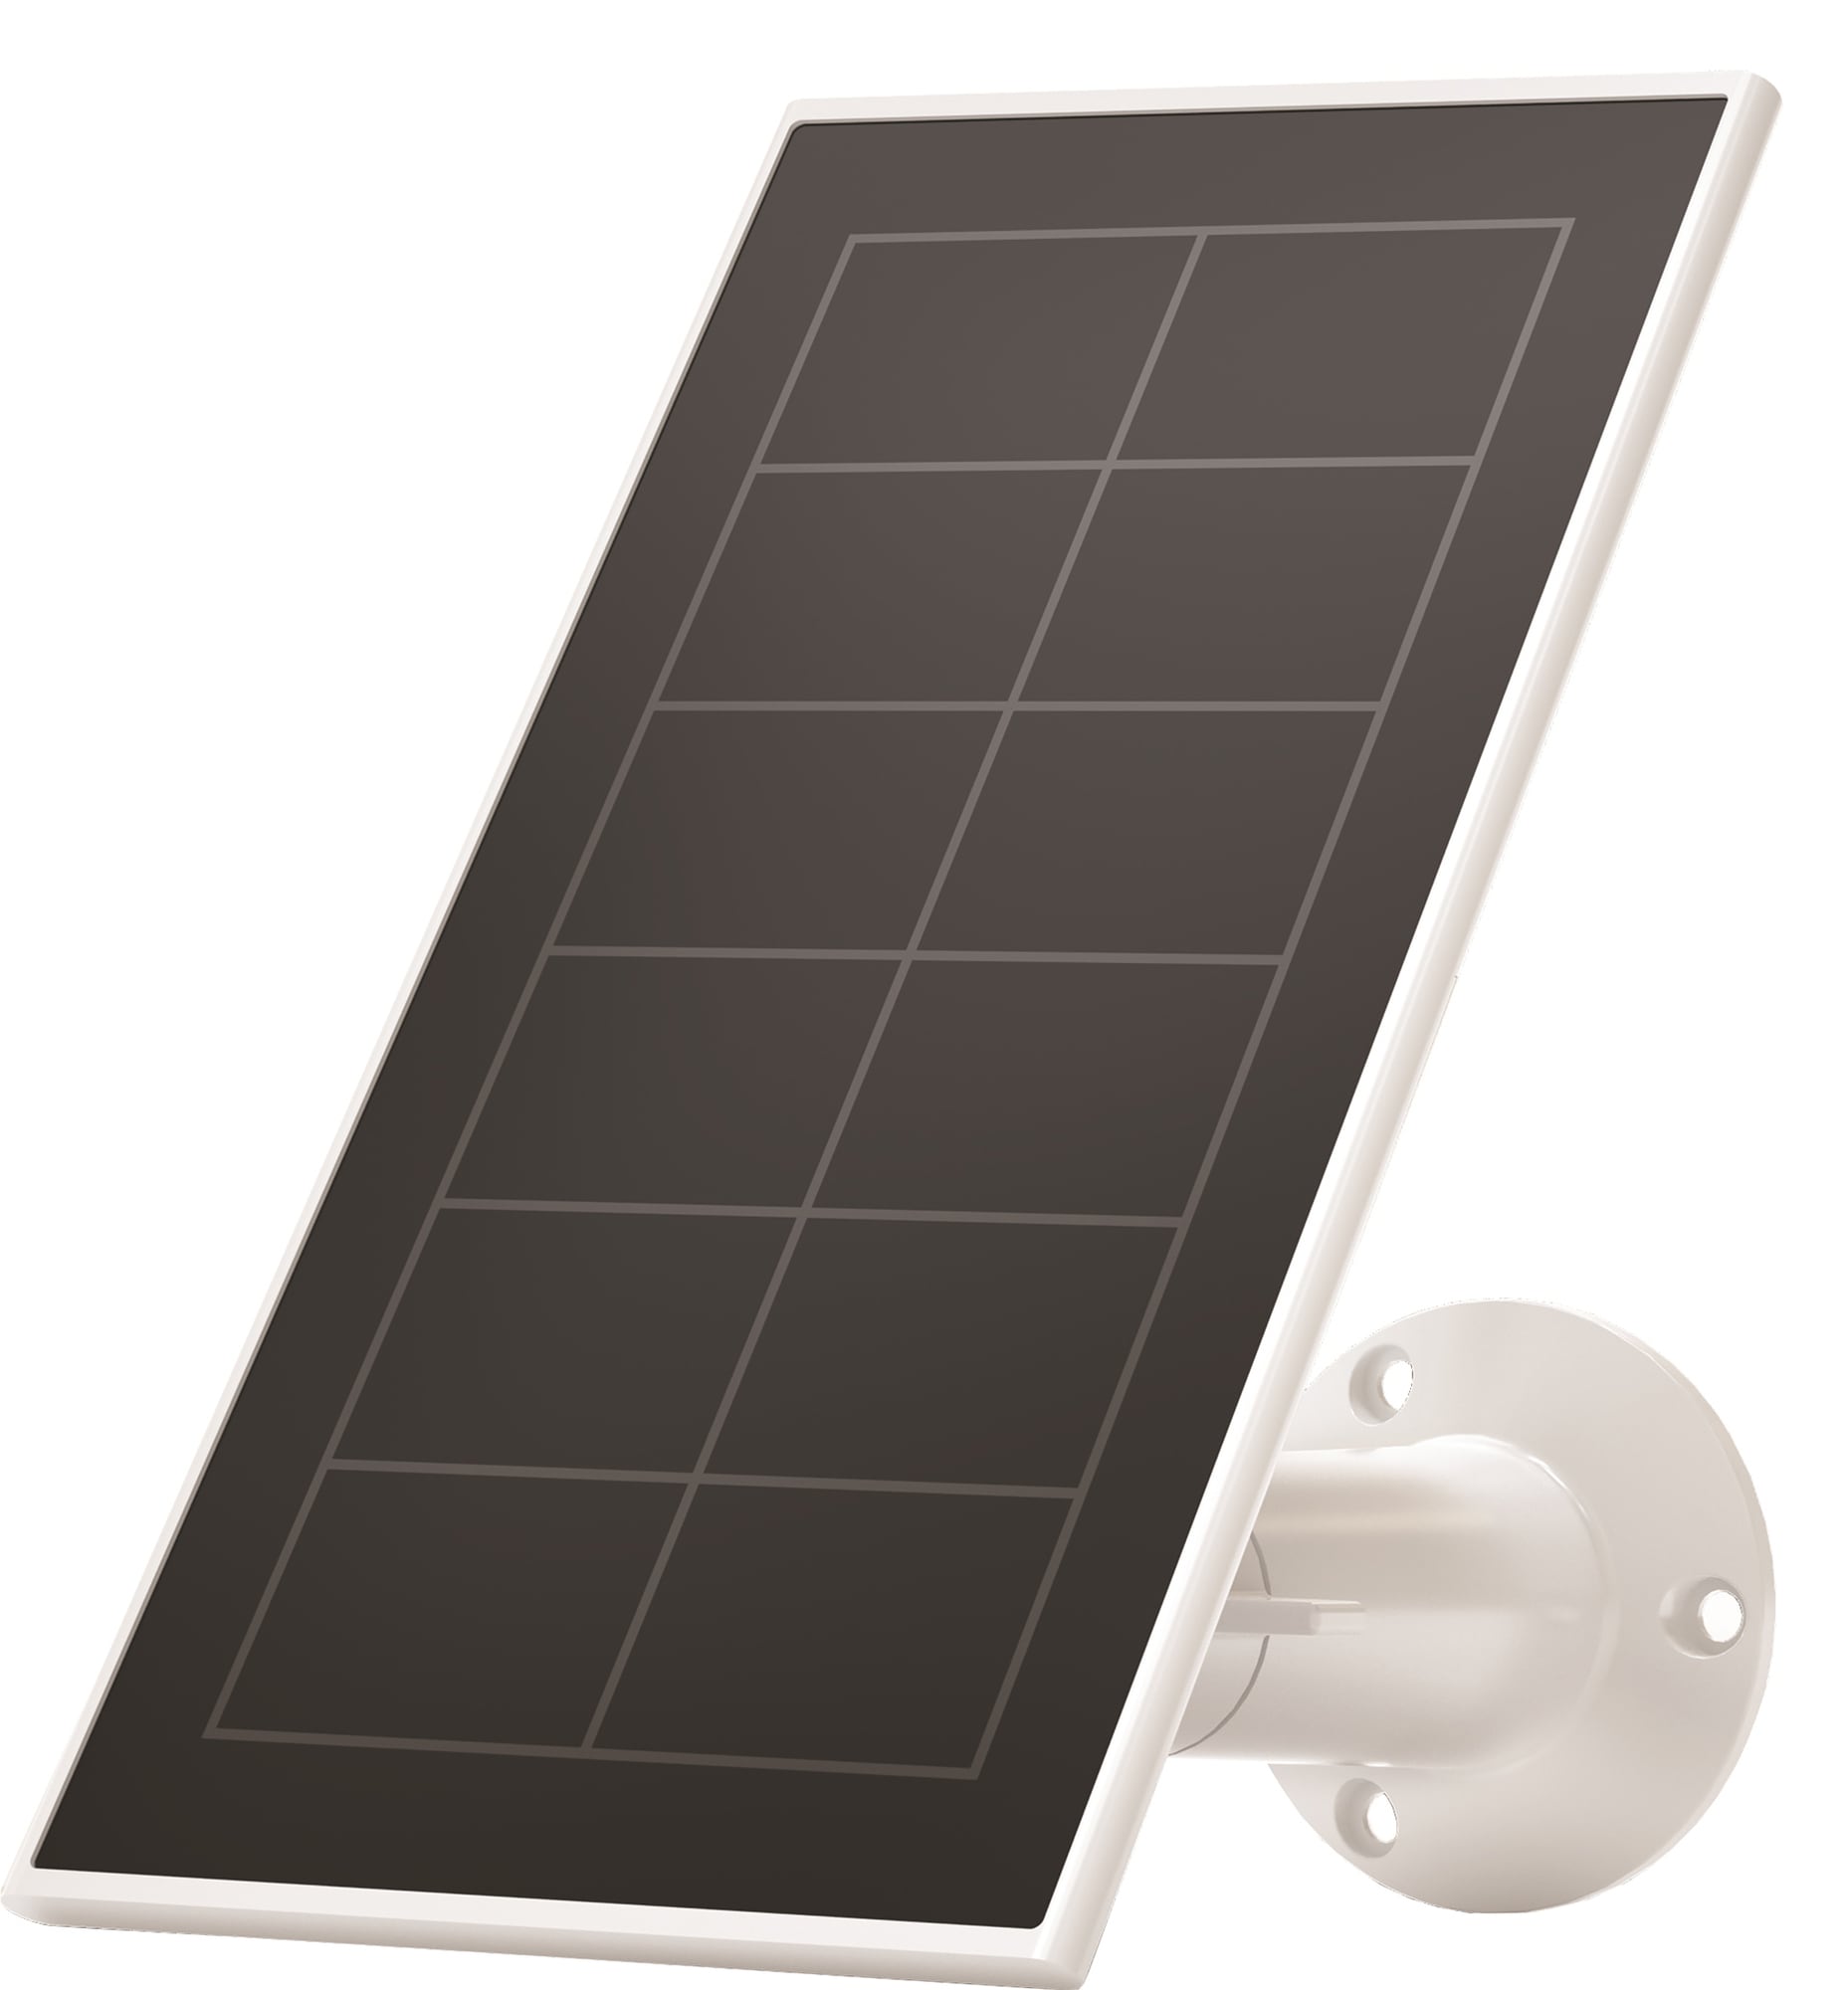 Arlo Solar Panel Charger laturi Ultra, Pro 3 ja Pro 4 kameroille (va.) -  Gigantti verkkokauppa